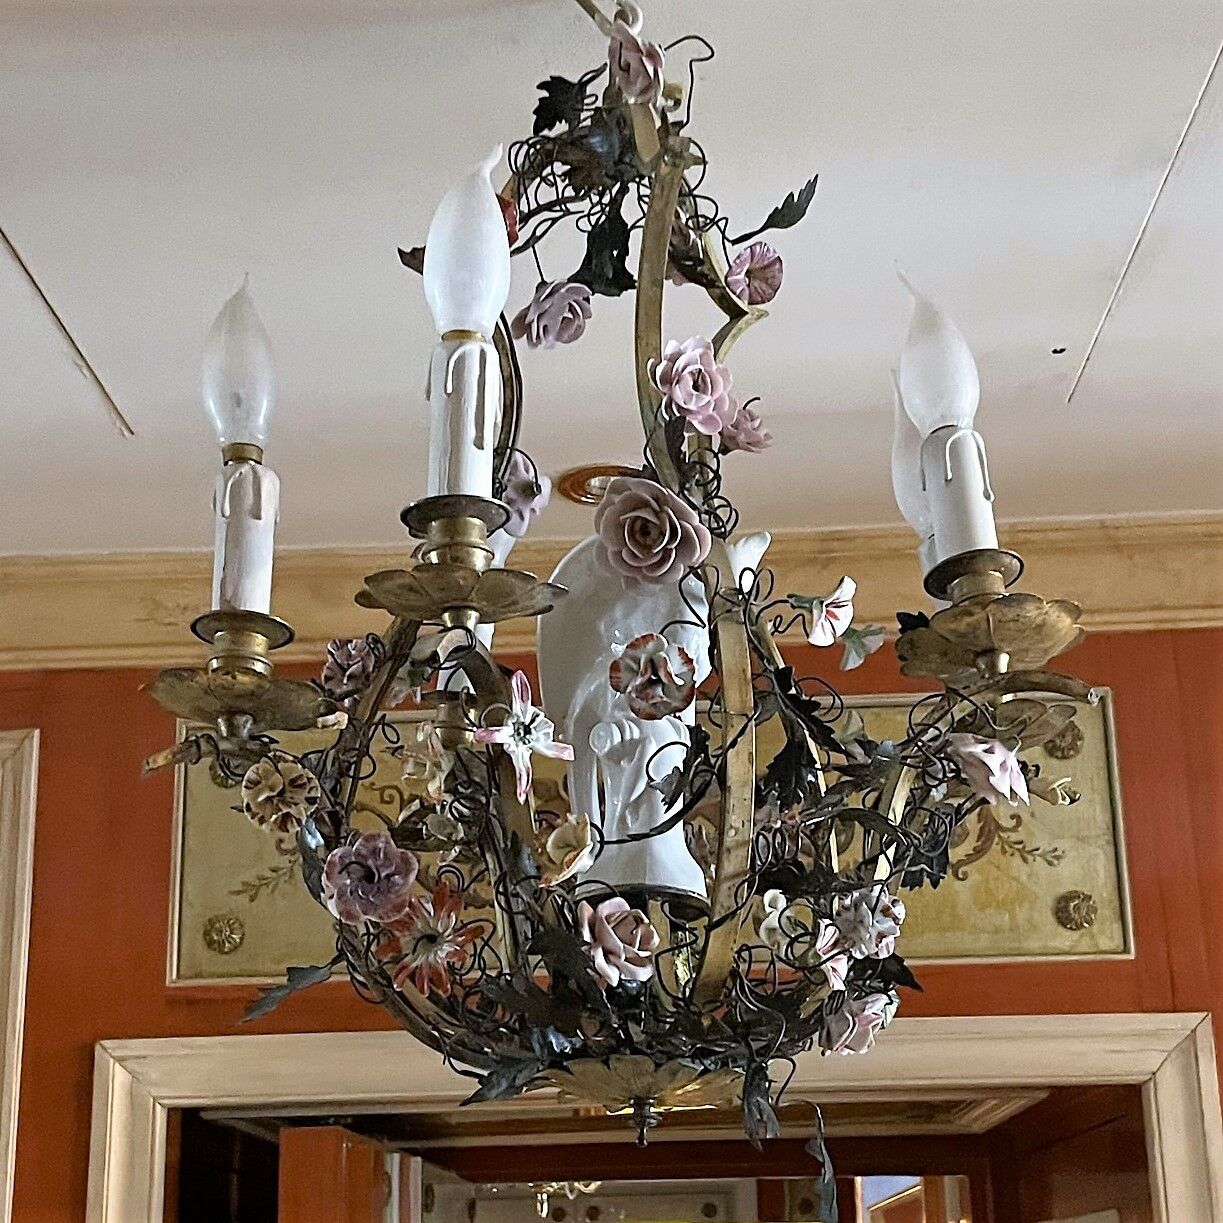 Null 一盏六灯鎏金青铜吊灯，装饰有迈森风格的瓷器花朵。中间有一个白色珐琅彩的小天使。

H.60 cm - D. 40 cm

出处：奥赛博物馆的公寓由雅克&hellip;